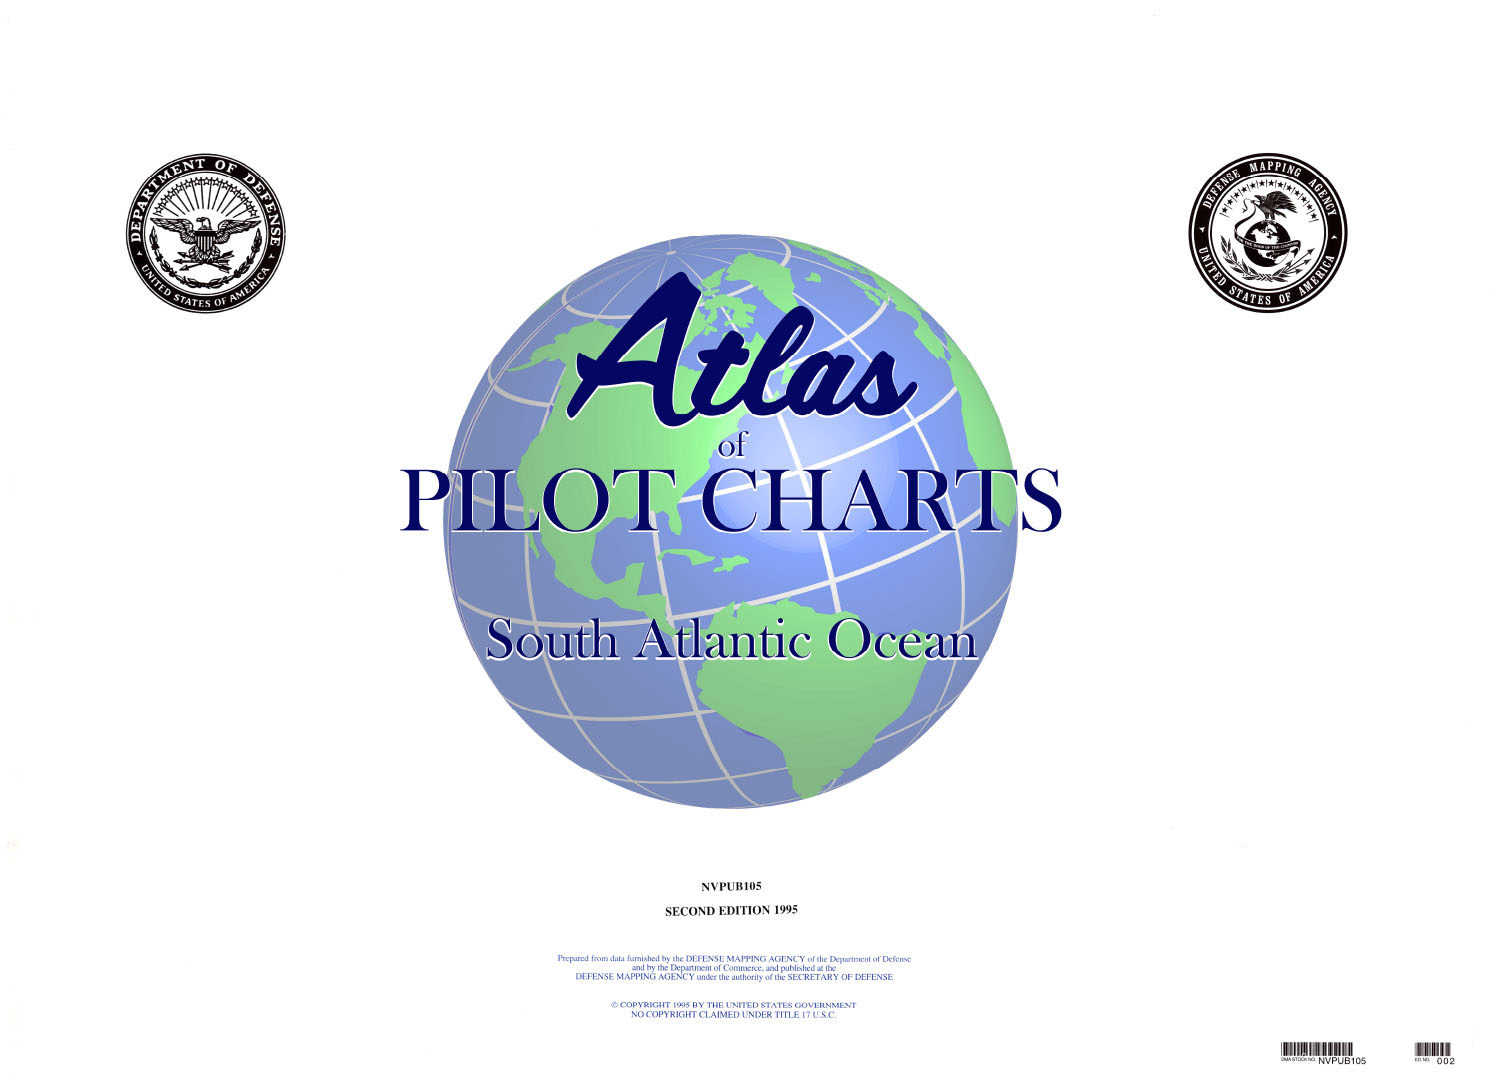 Atlas of Pilot Charts, PUB 105: Atlas of Pilot Charts South Atlantic Ocean